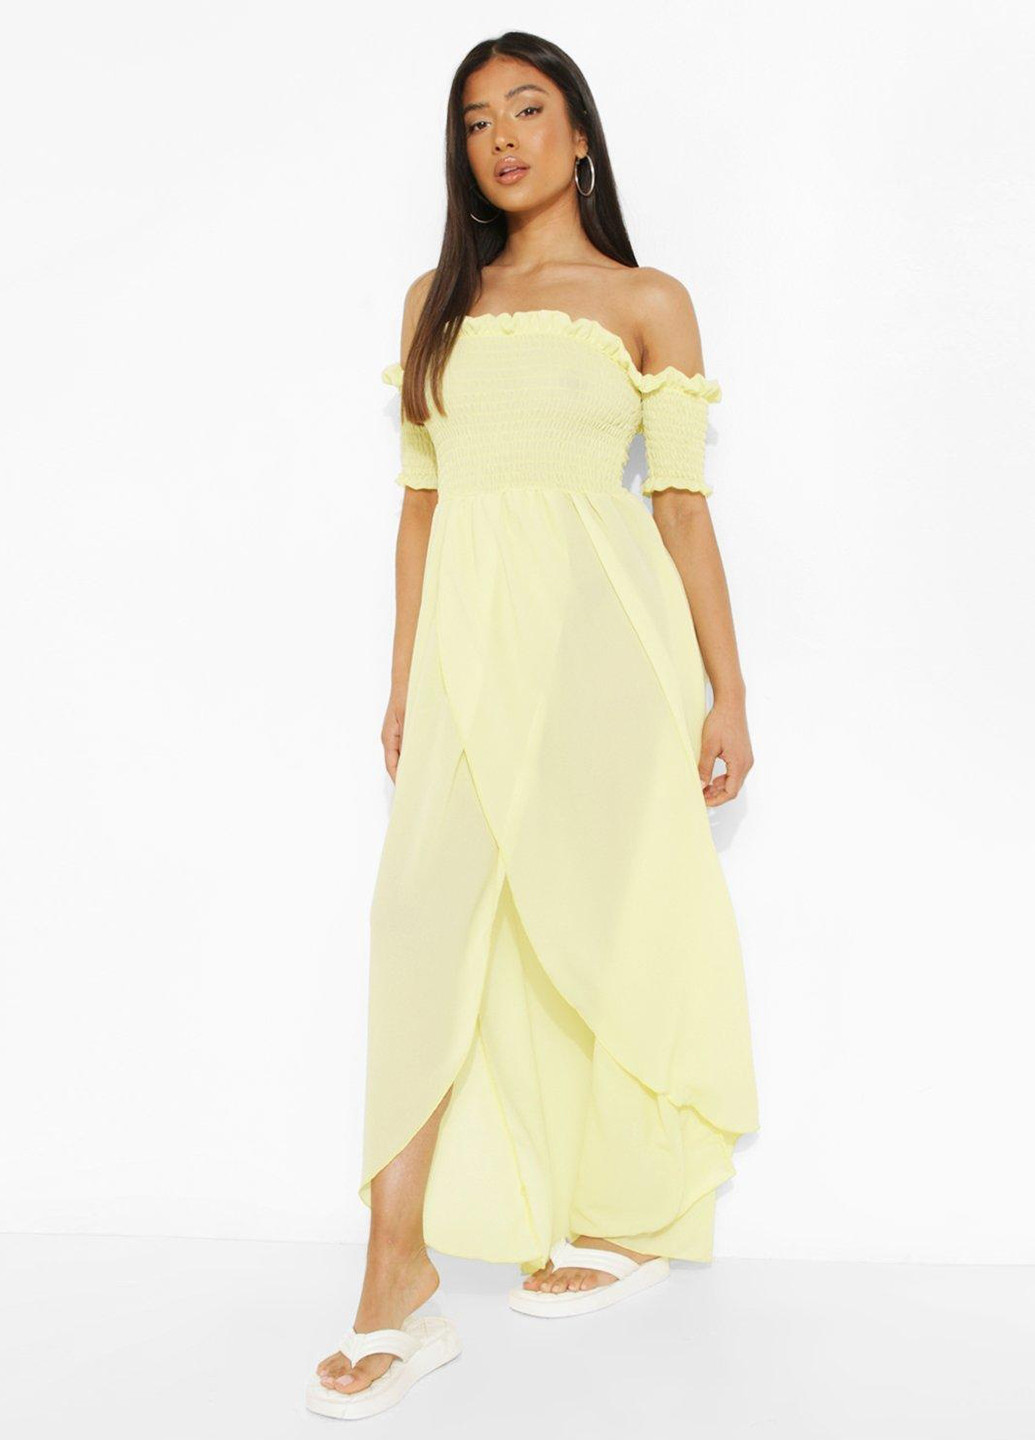 Светло-желтое пляжное платье на запах Boohoo однотонное